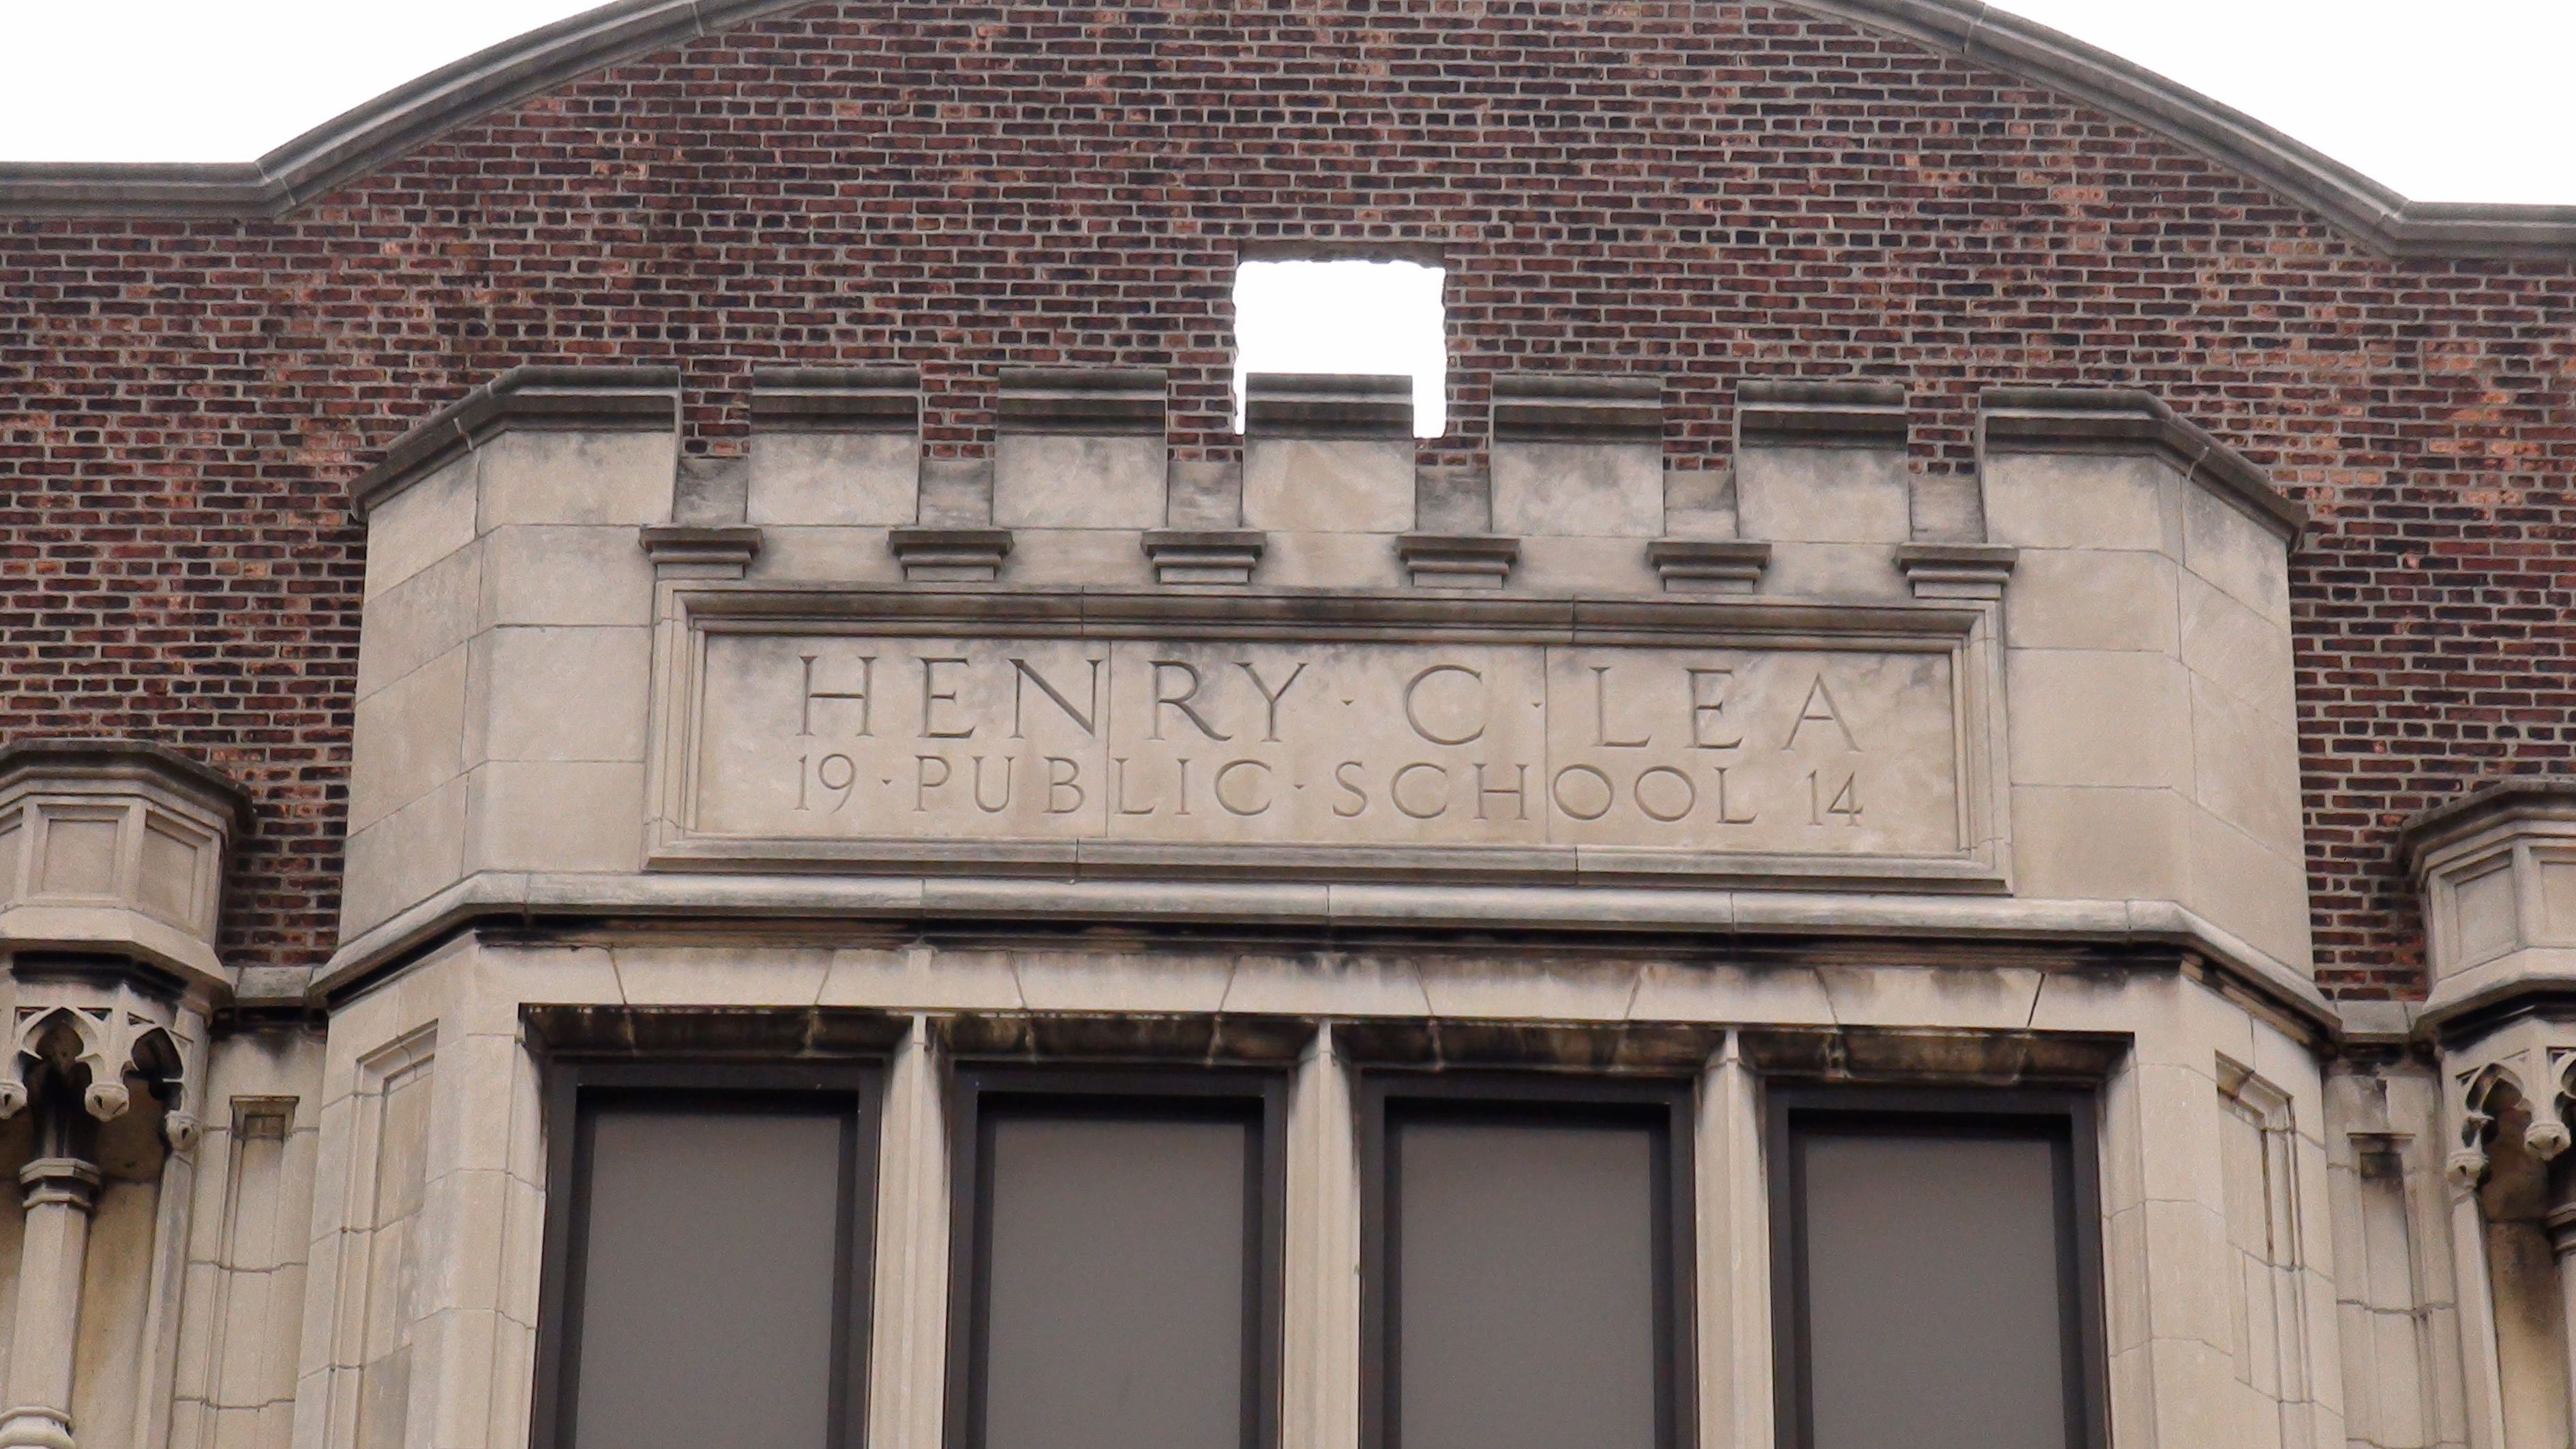 Henry Lea School